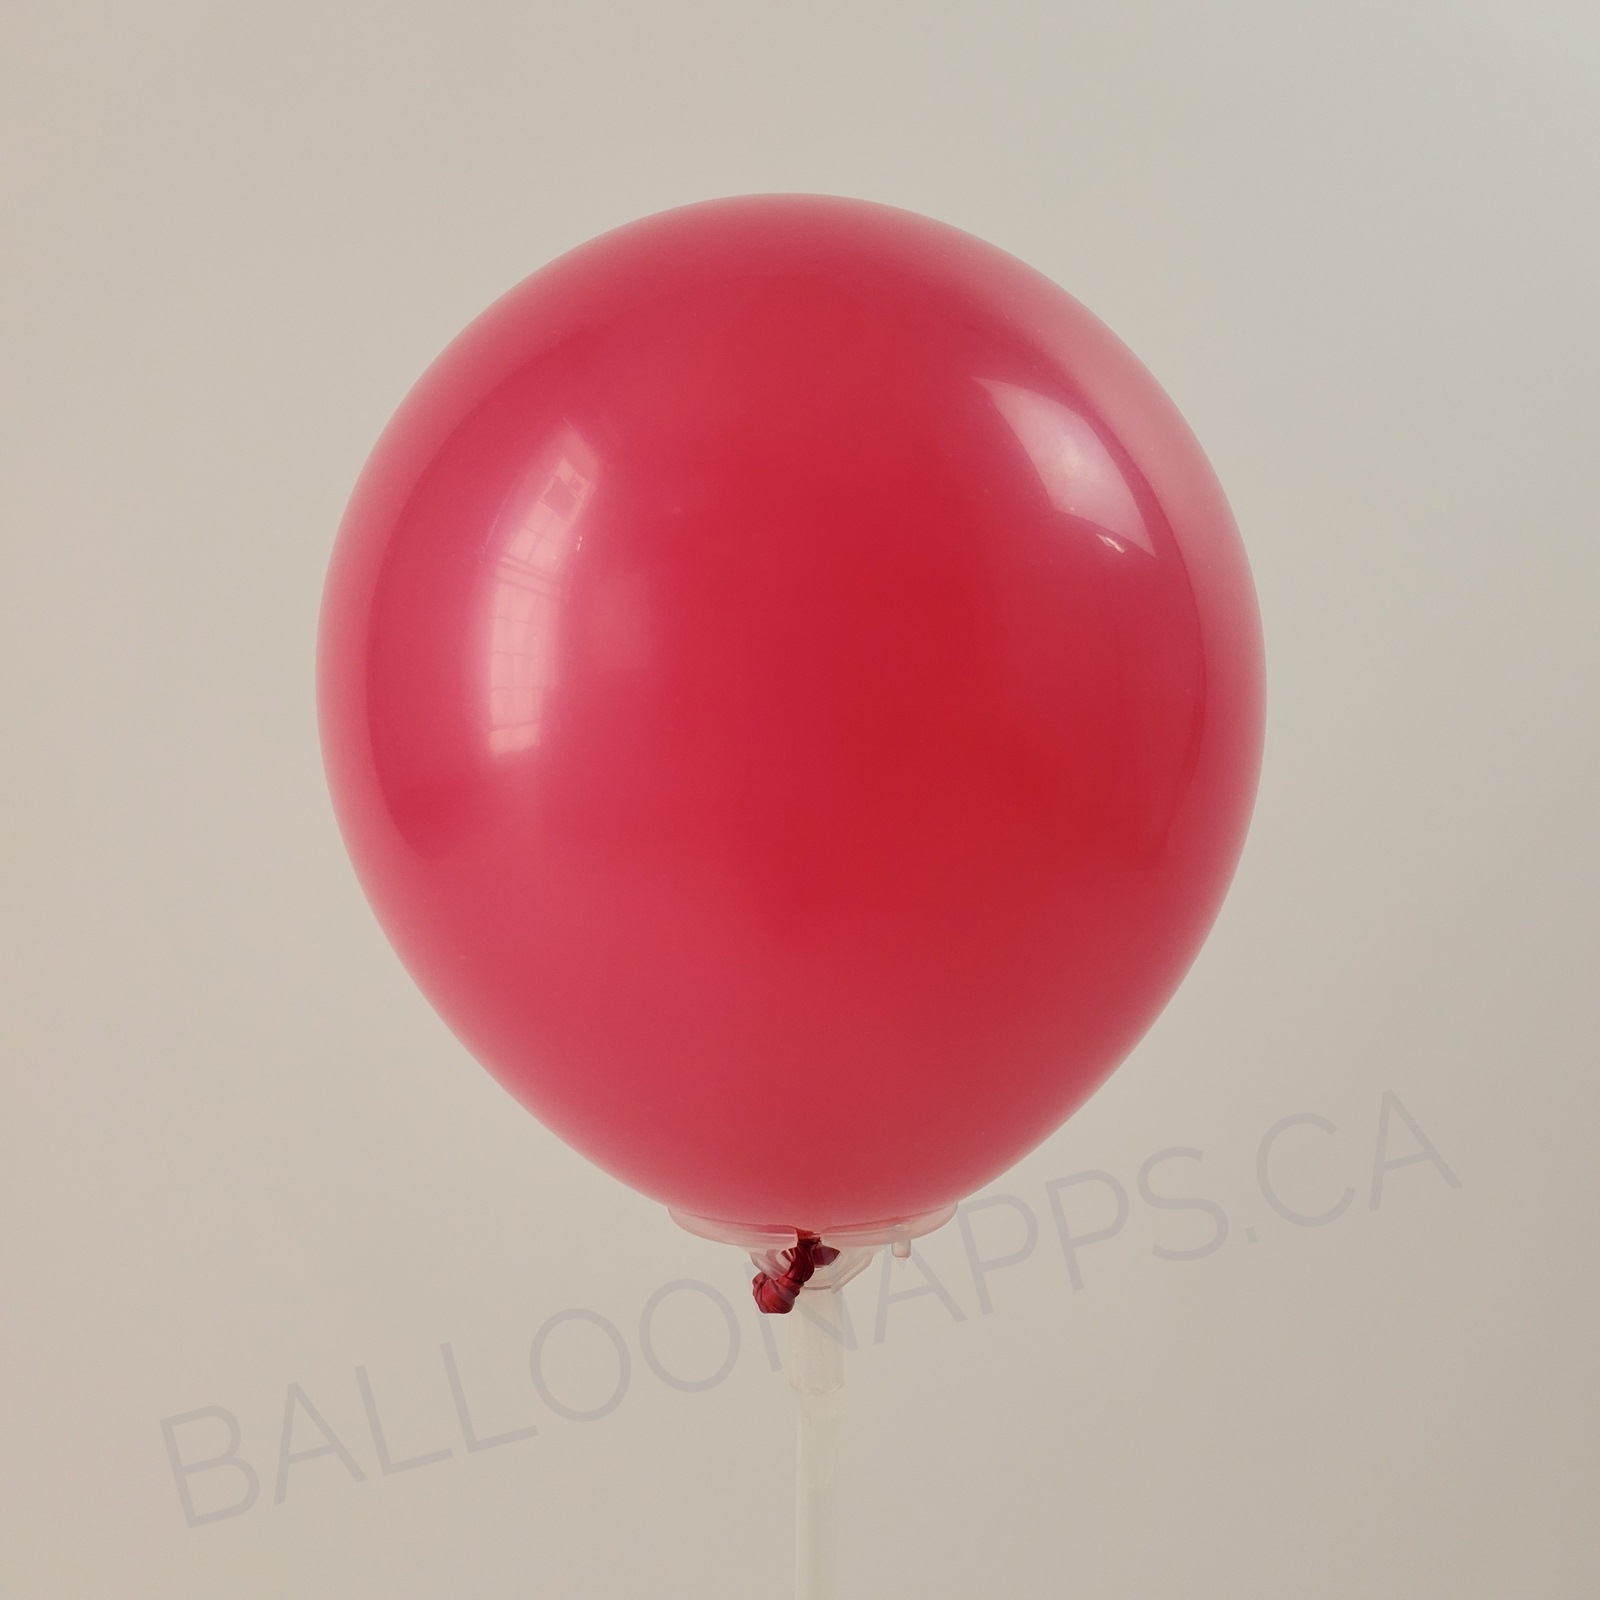 balloon texture (100) 6